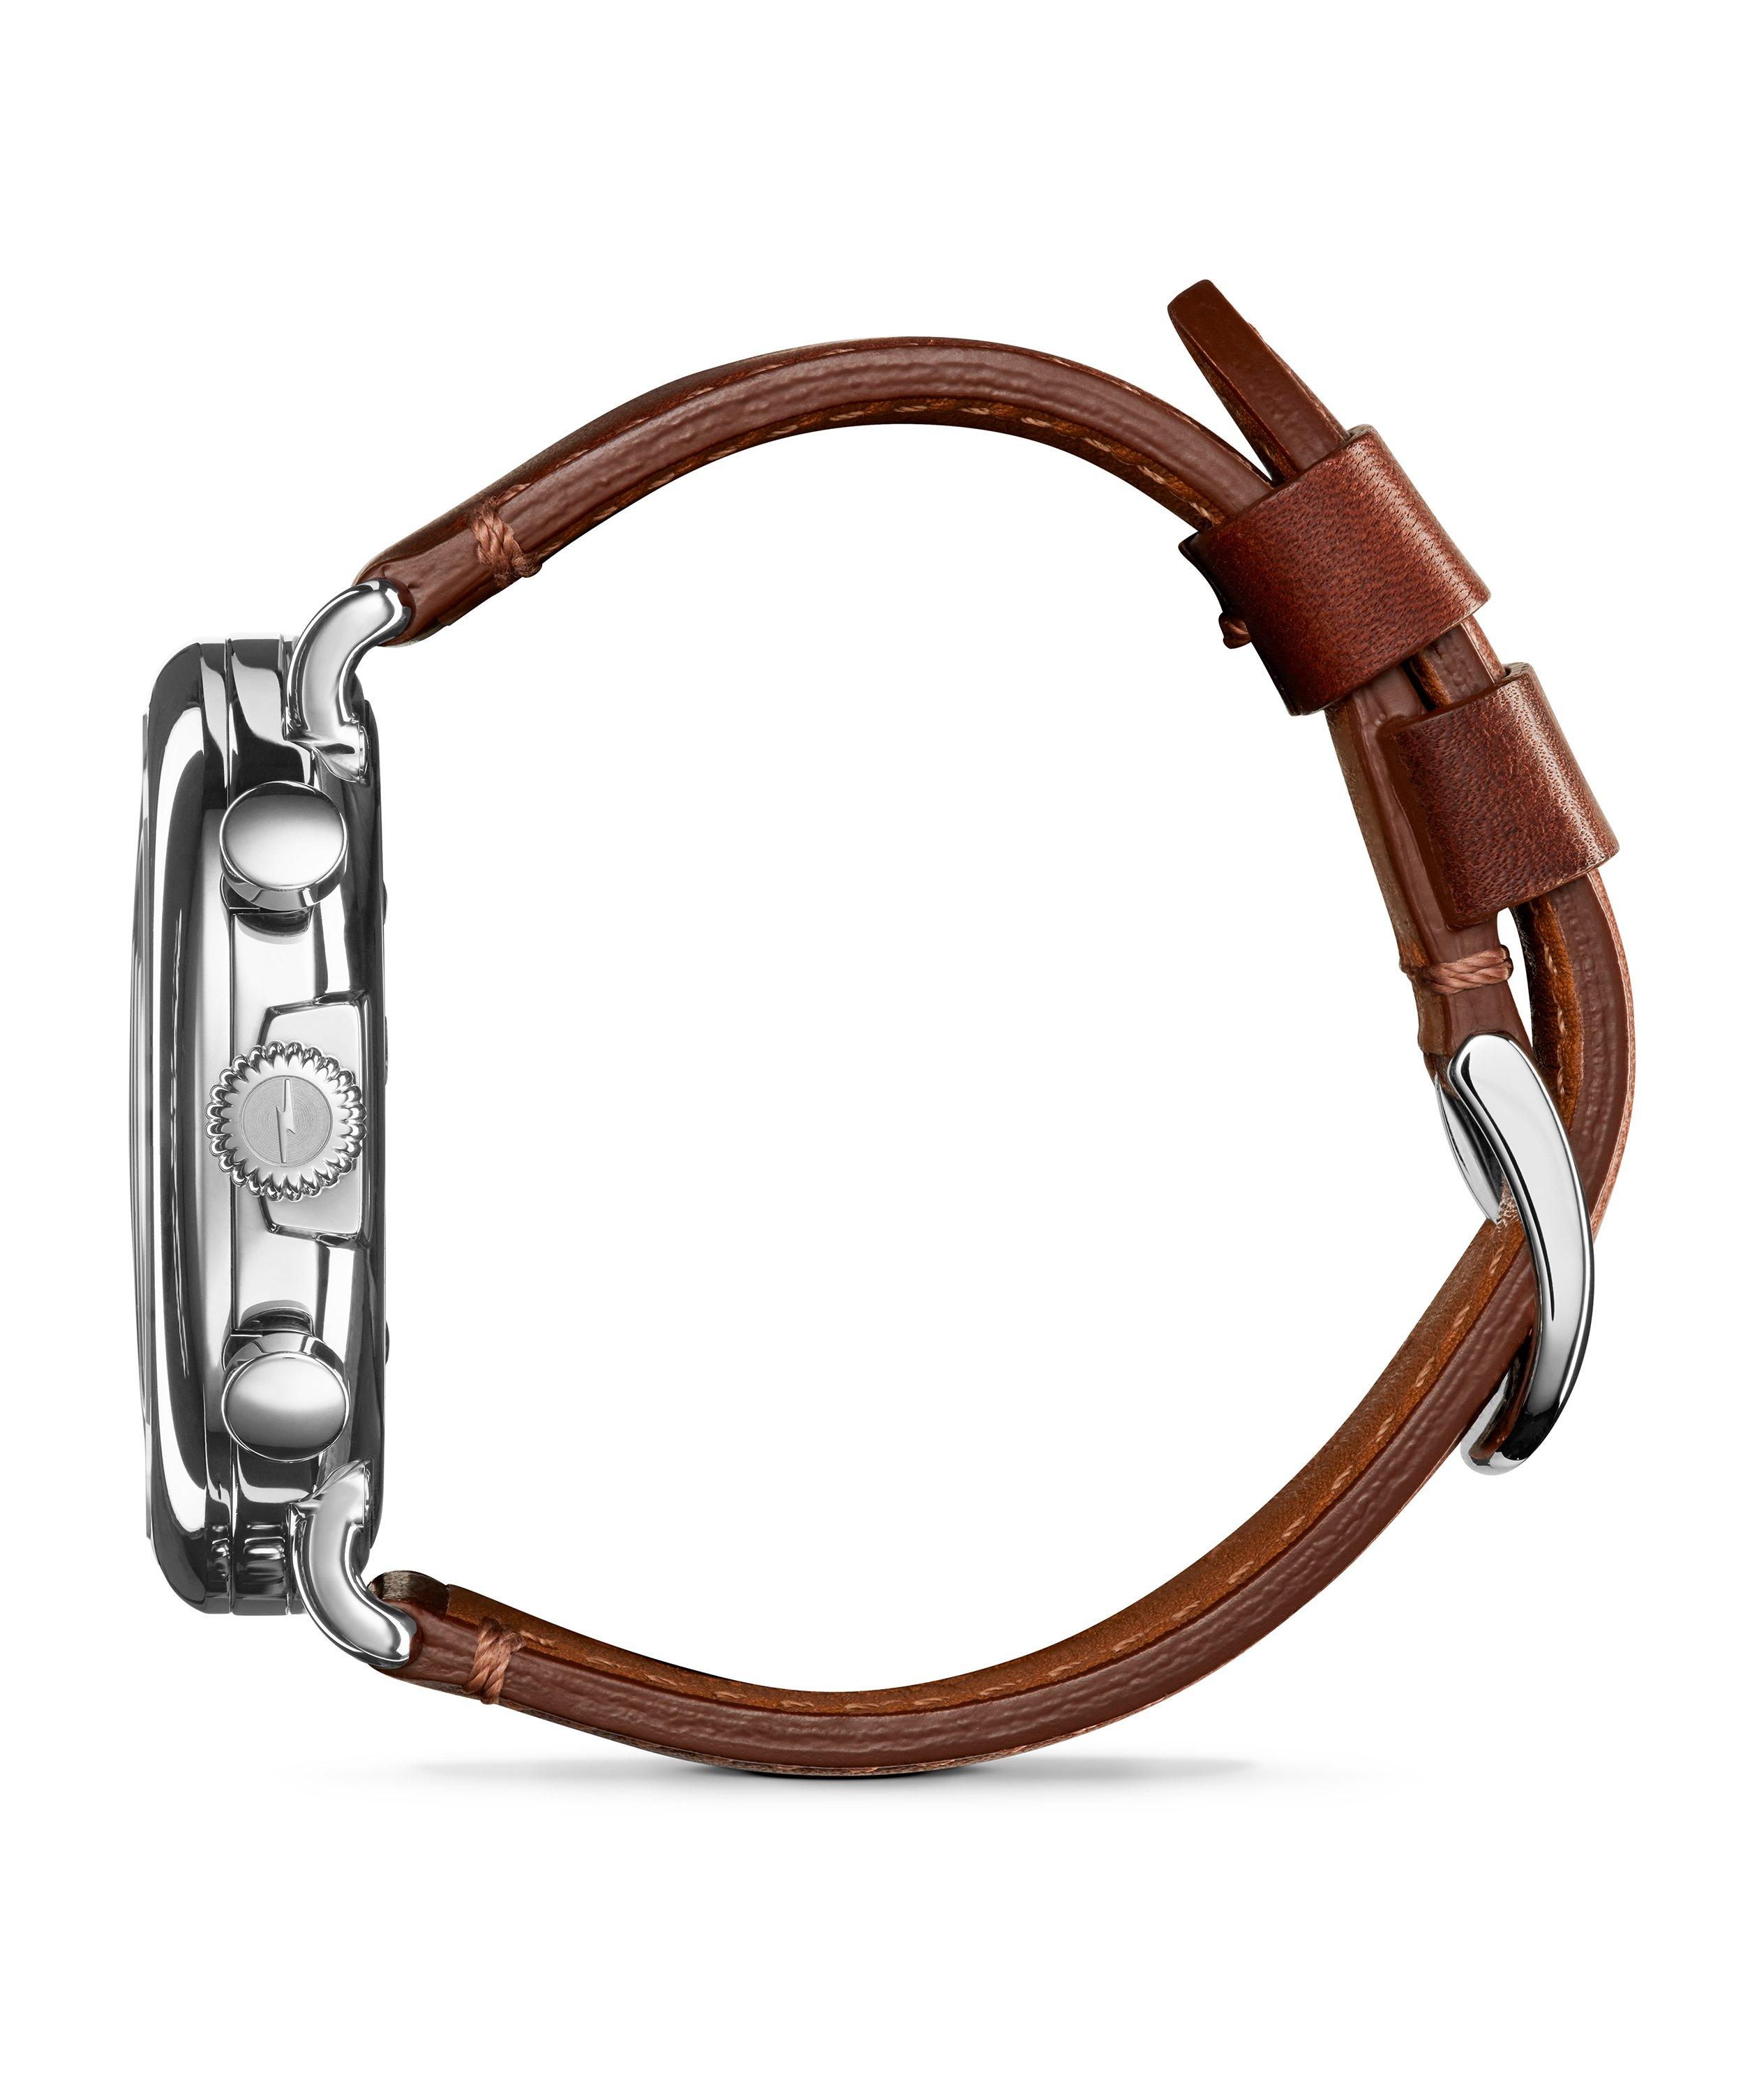 Montre-chronographe Runwell avec bracelet en cuir image 1